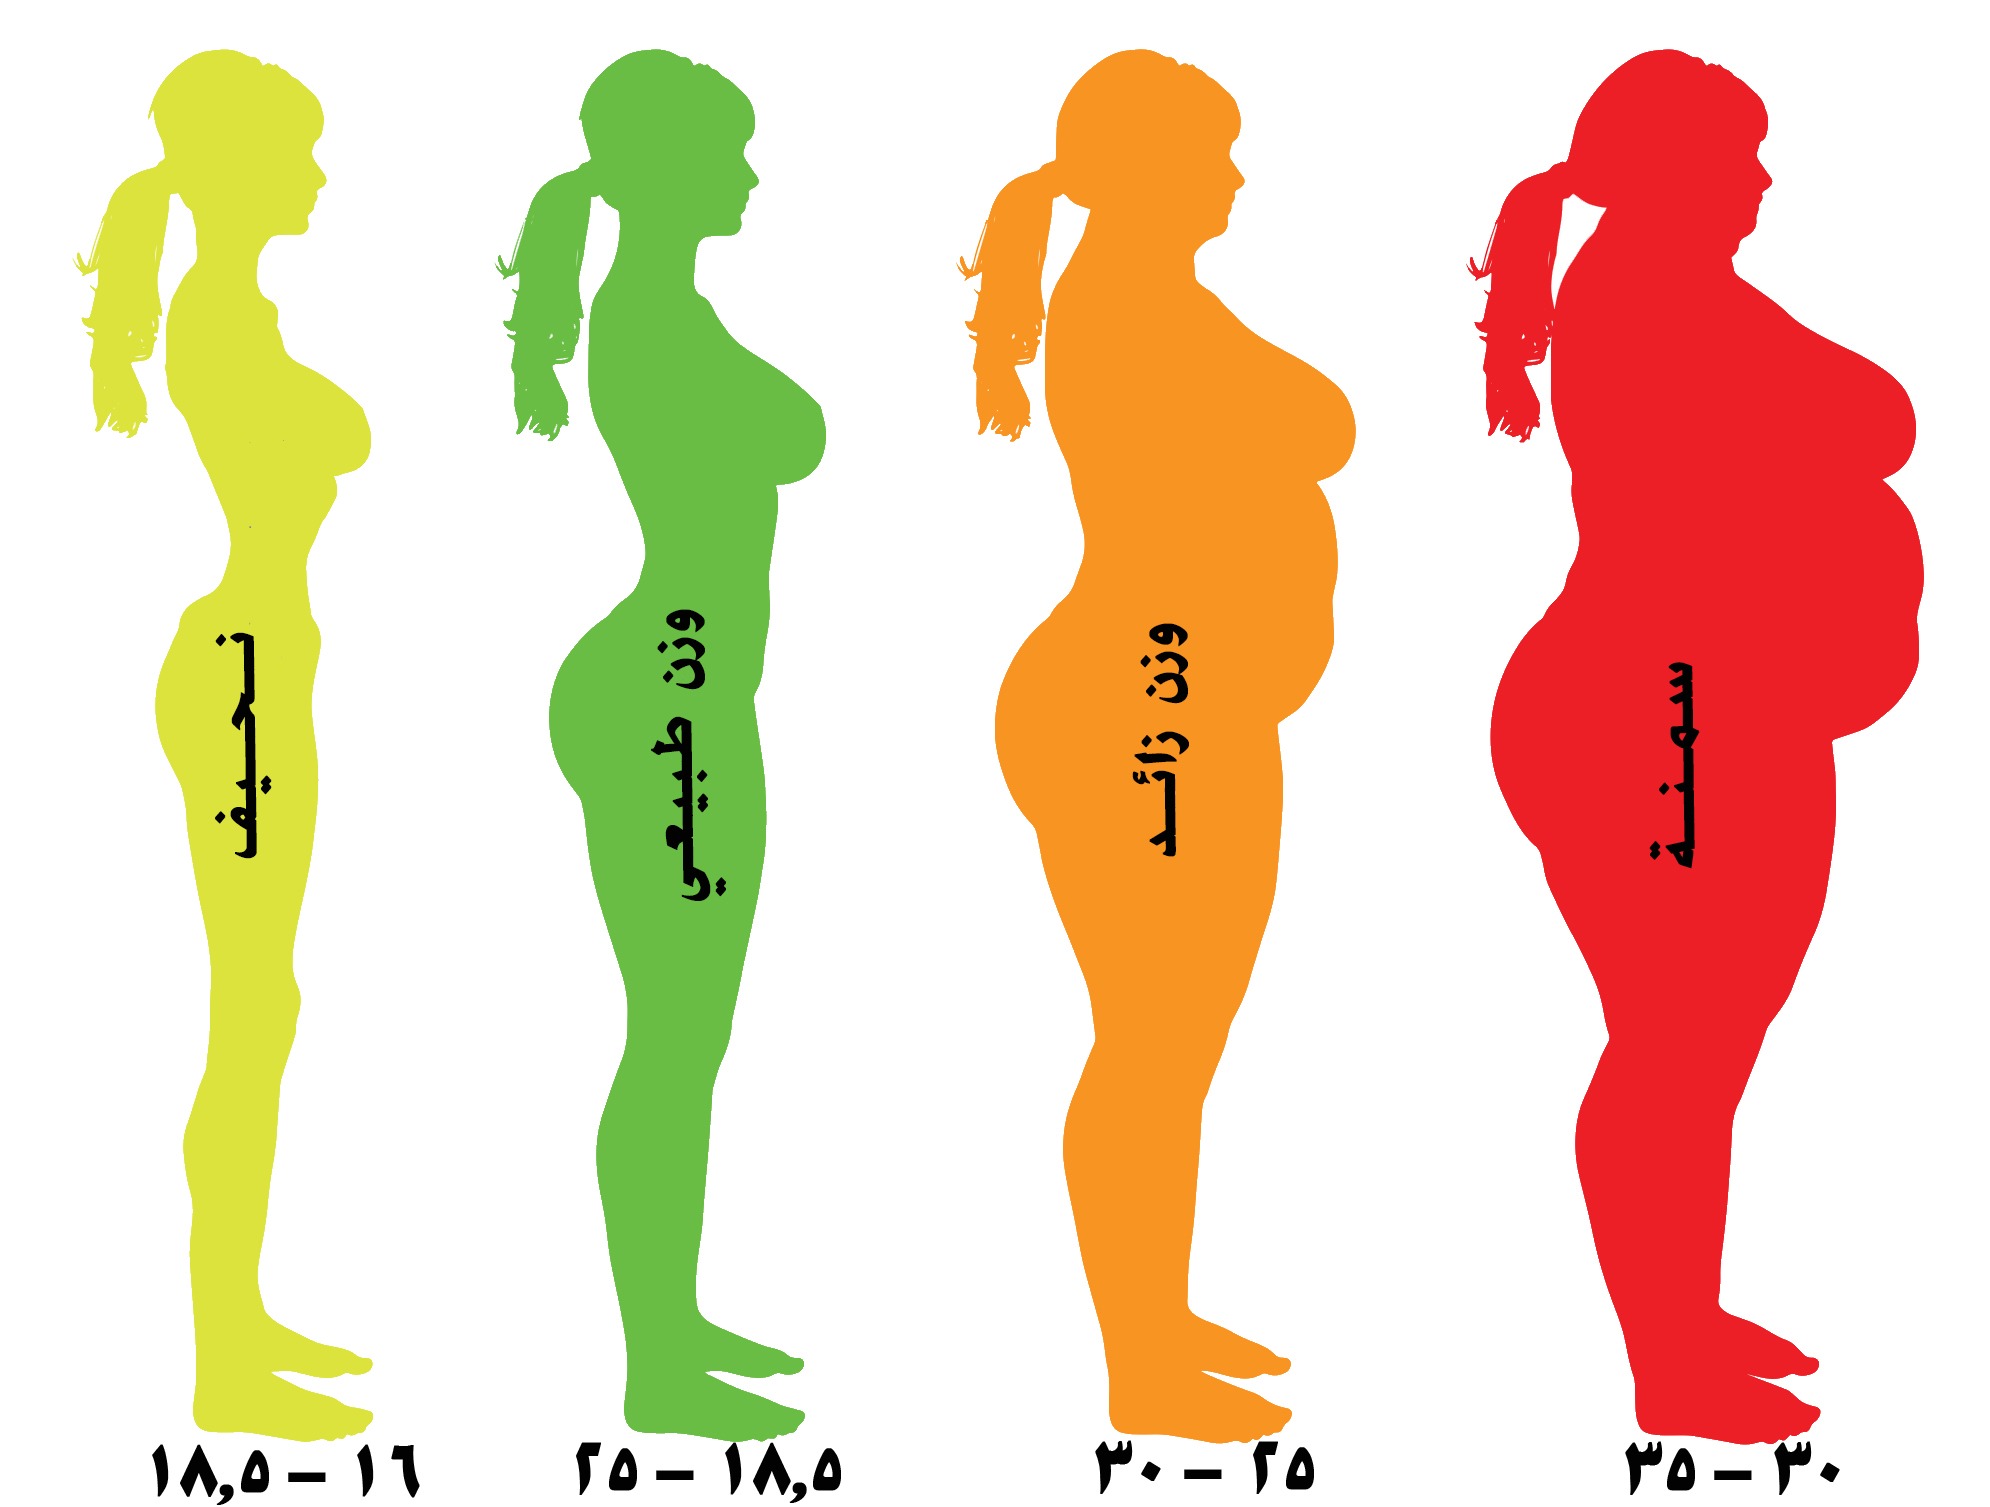 الوزن المثالي حسب الطول والعمر1